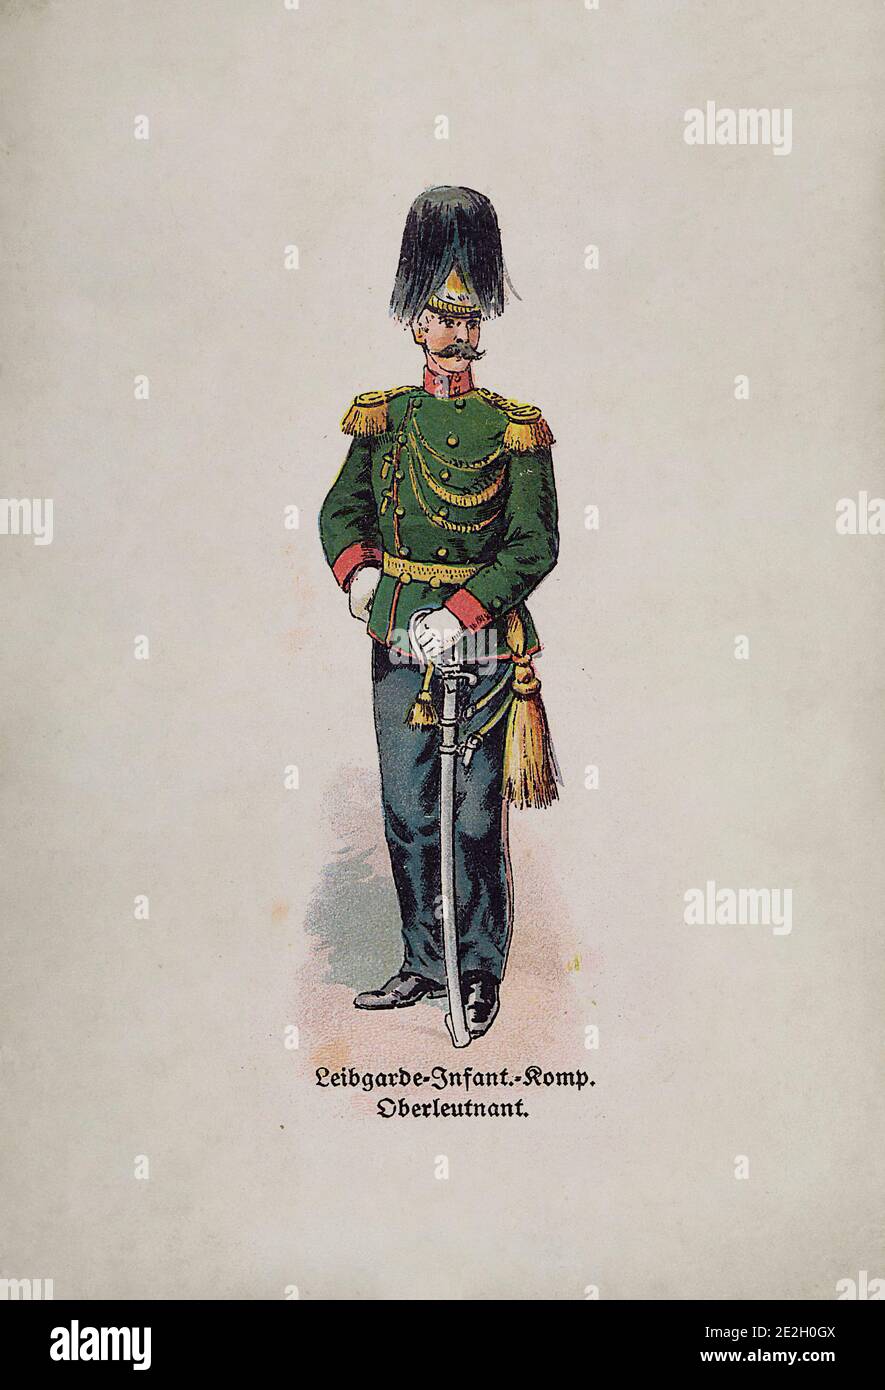 Österreichisch-ungarische Armee (kaiserliche und königliche Streitkräfte). Leutnant der Garde Infanterie. Österreich-Ungarische Monarchie (Doppelmonarchie). 1910er Stockfoto